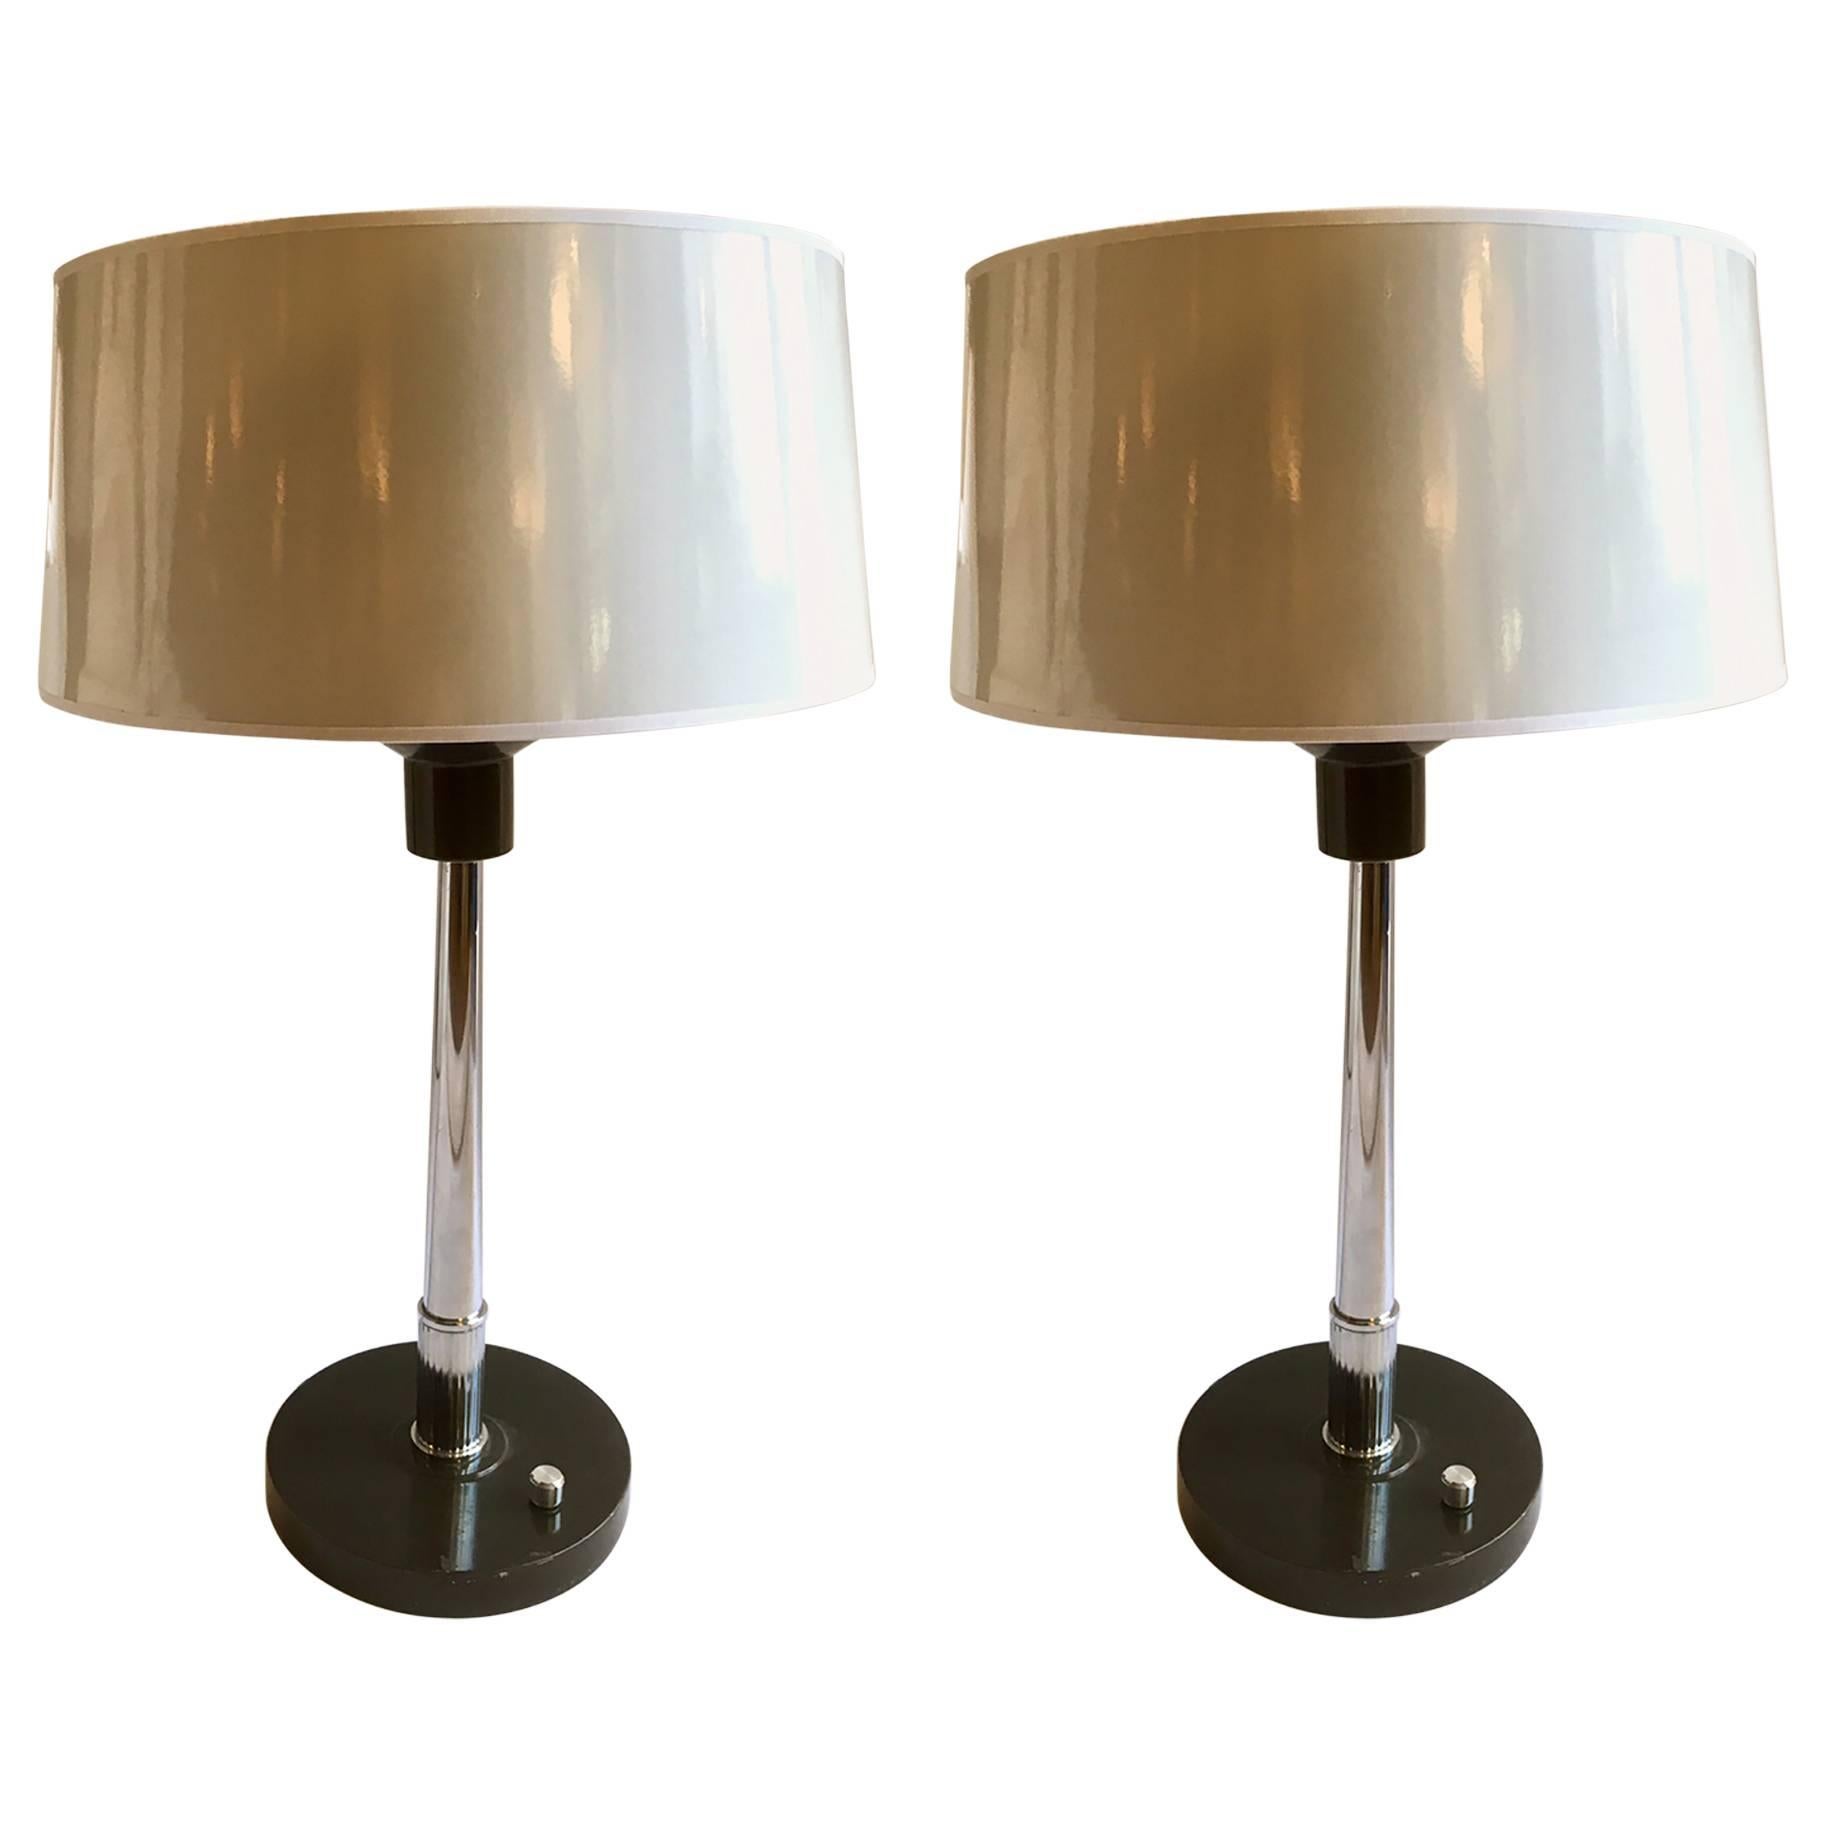 Paire de lampes de bureau ou de table, fabriquées en métal laqué dans sa base et colonne en métal chromé. Nuances en blanc.cuir verni, intérieur argenté.